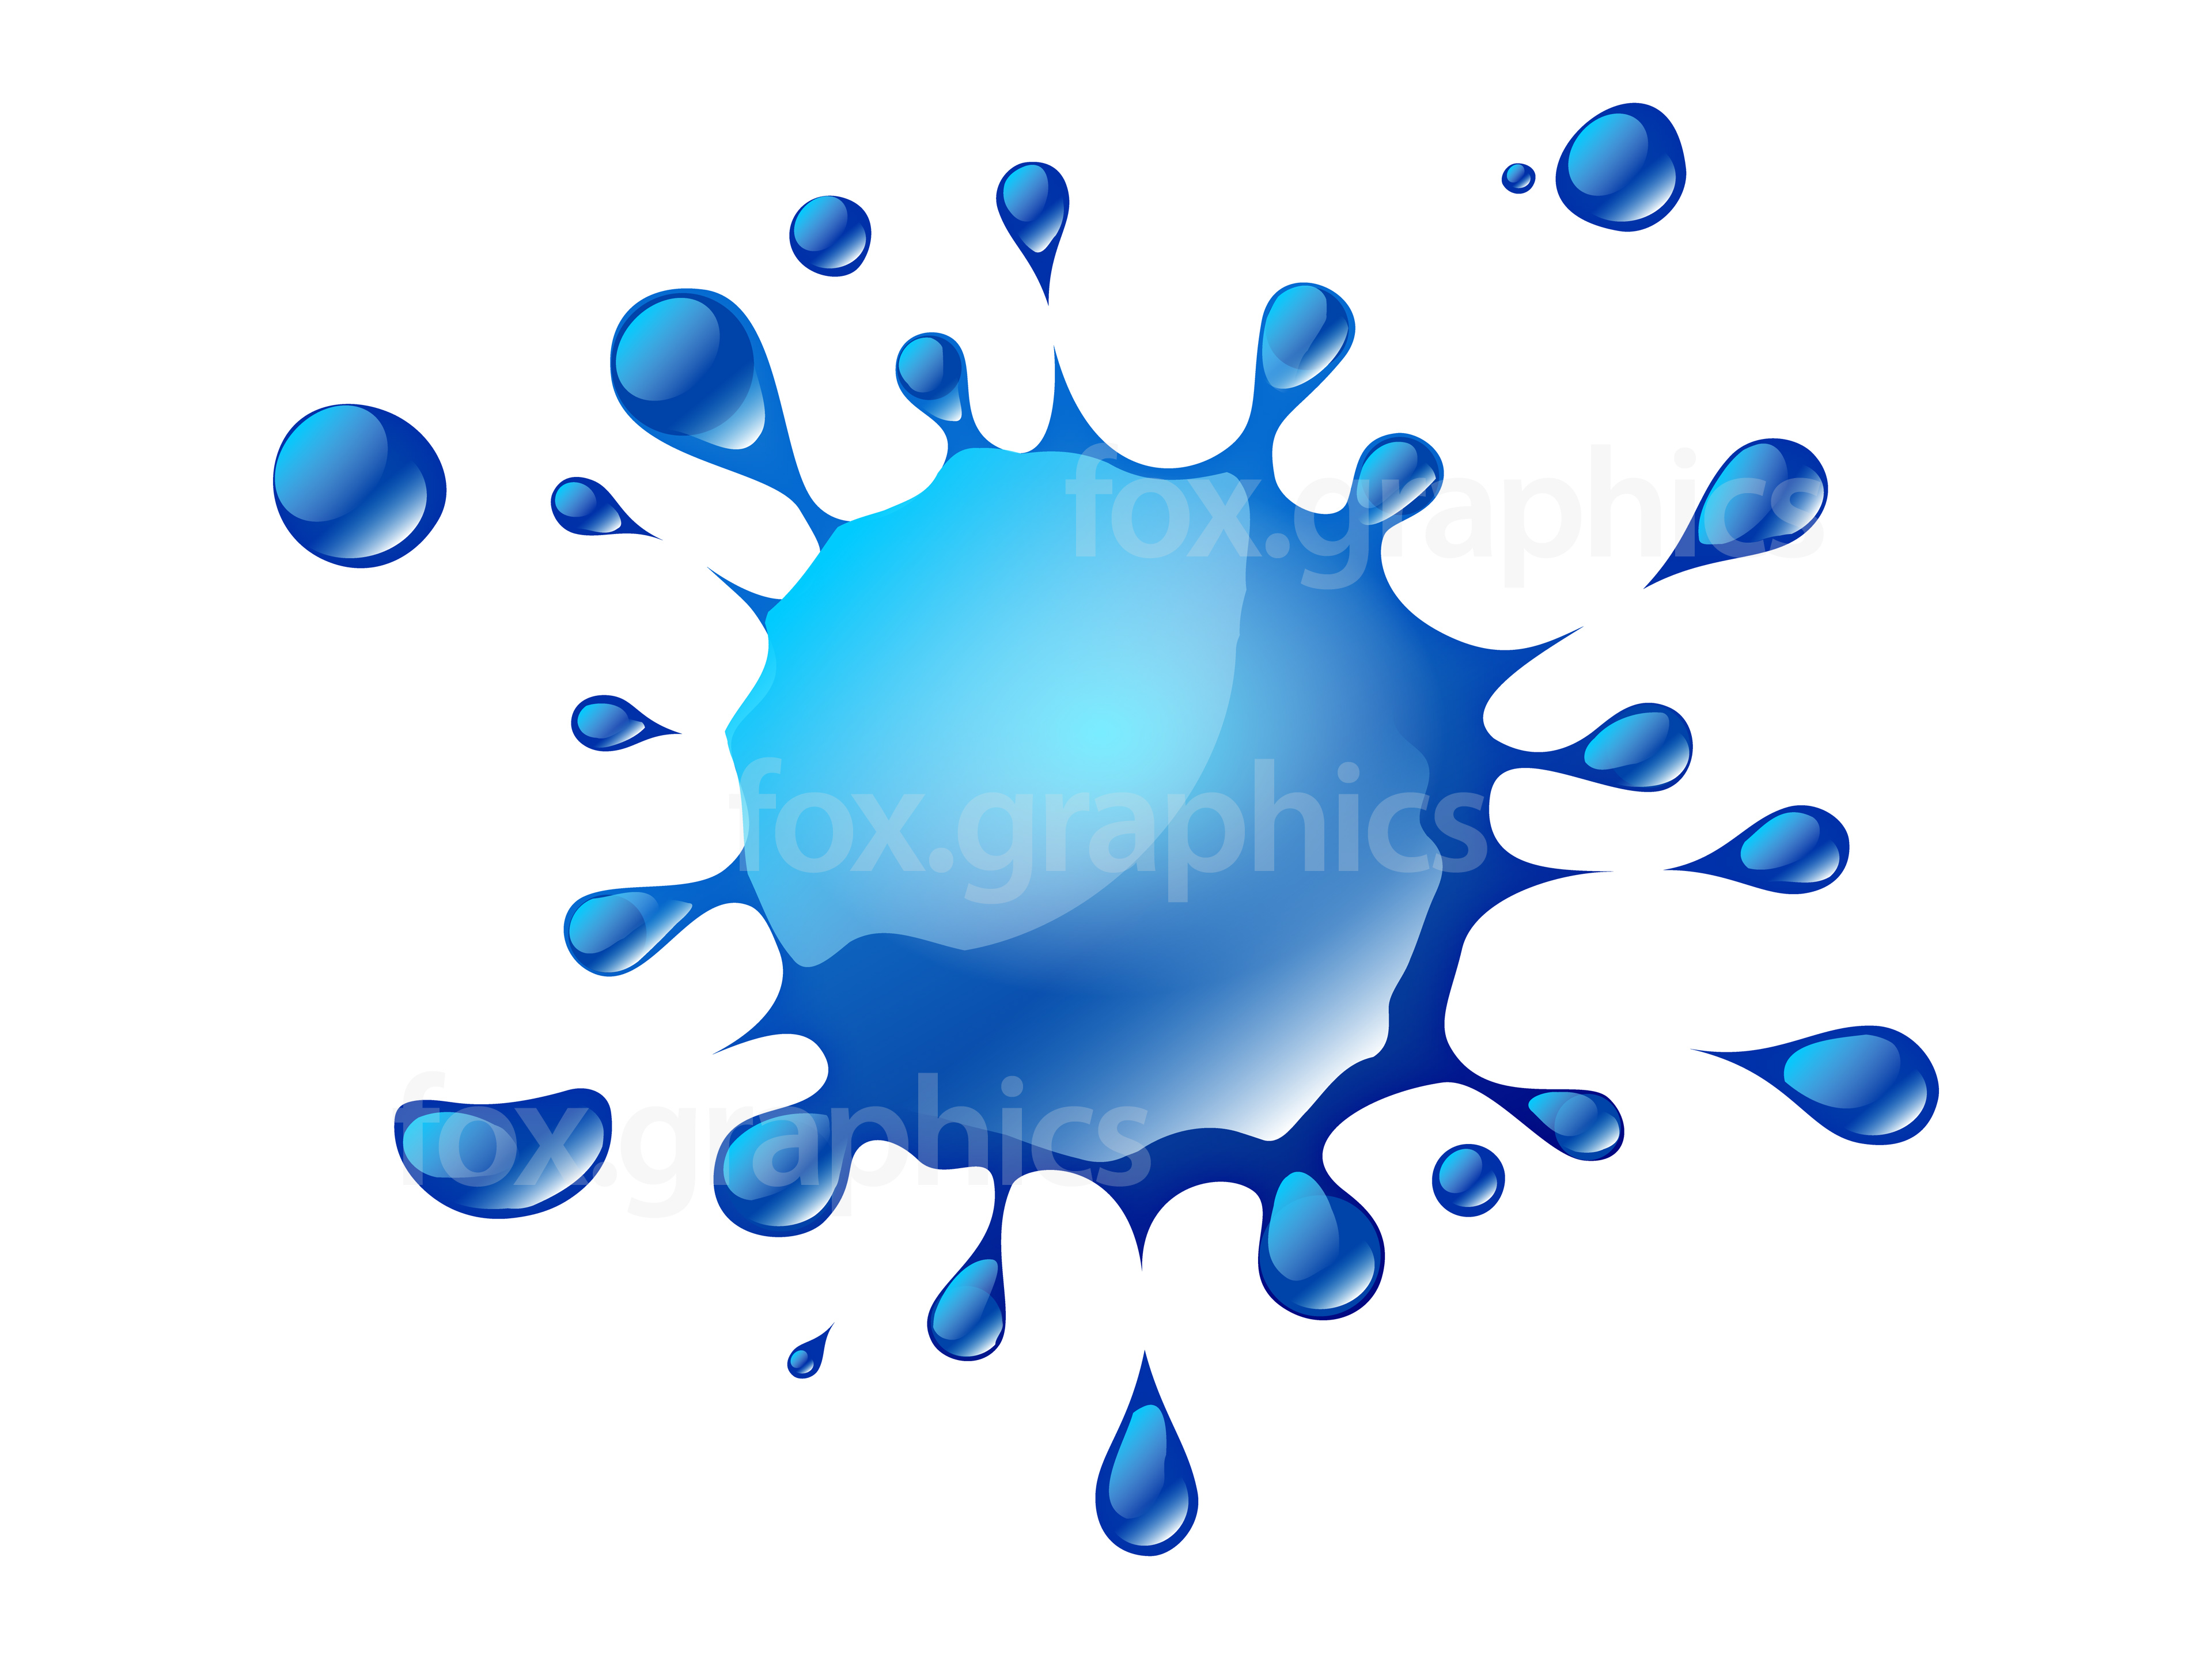 Vector Water Splash Graphic